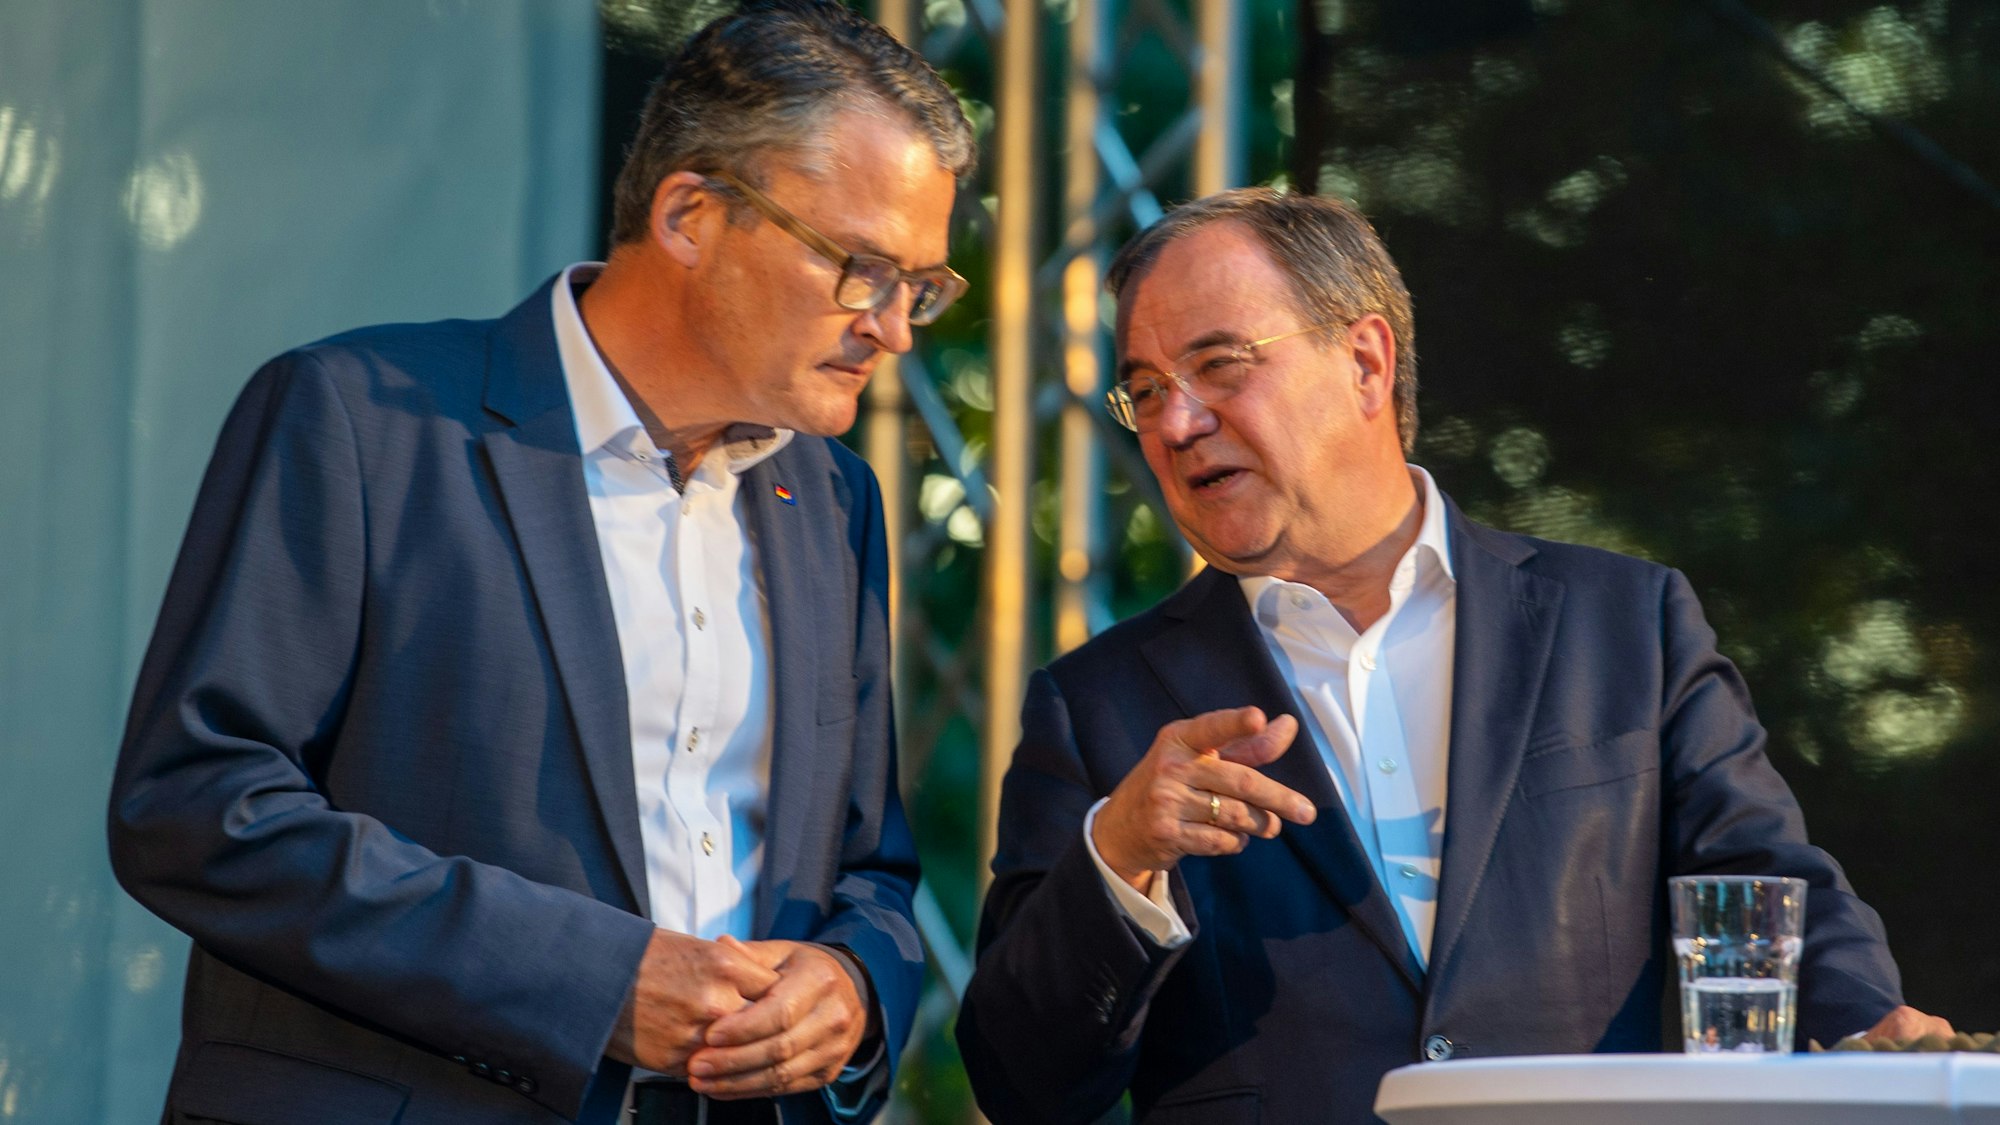 Die CDU-Politiker Roderich Kiesewetter und Armin Laschet stehen nebeneinander, sie tragen Anzüge.